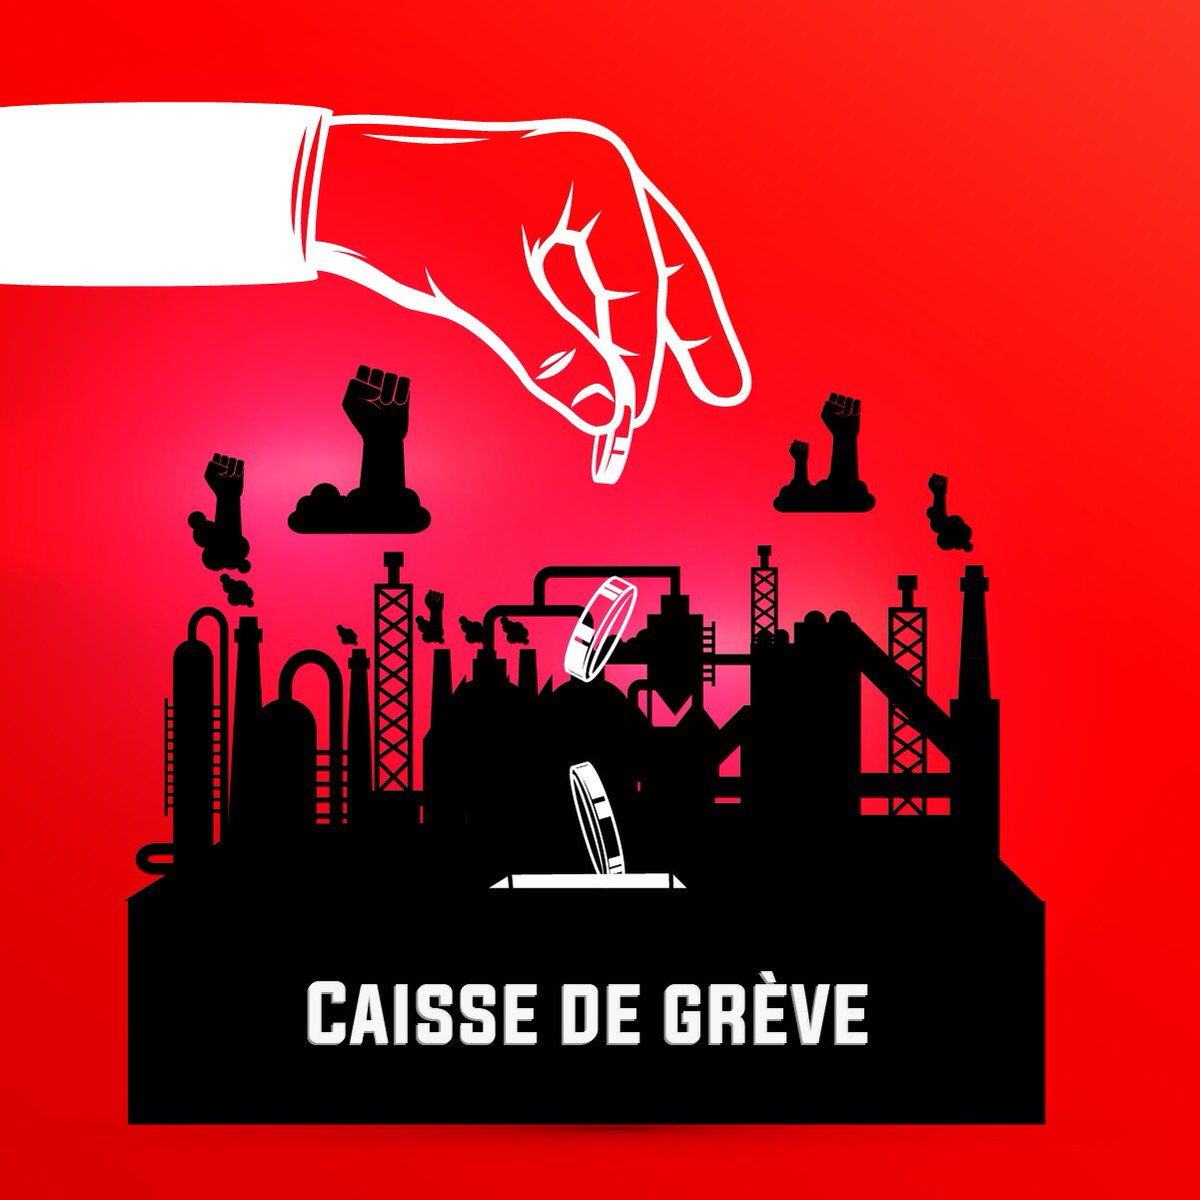 C’est le moment de donner de la force aux raffineurs en grève depuis 3 semaines sur la plateforme Total Normandie ! ✊🏼

#penuriedecarburant 

leetchi.com/c/caisse-de-so…